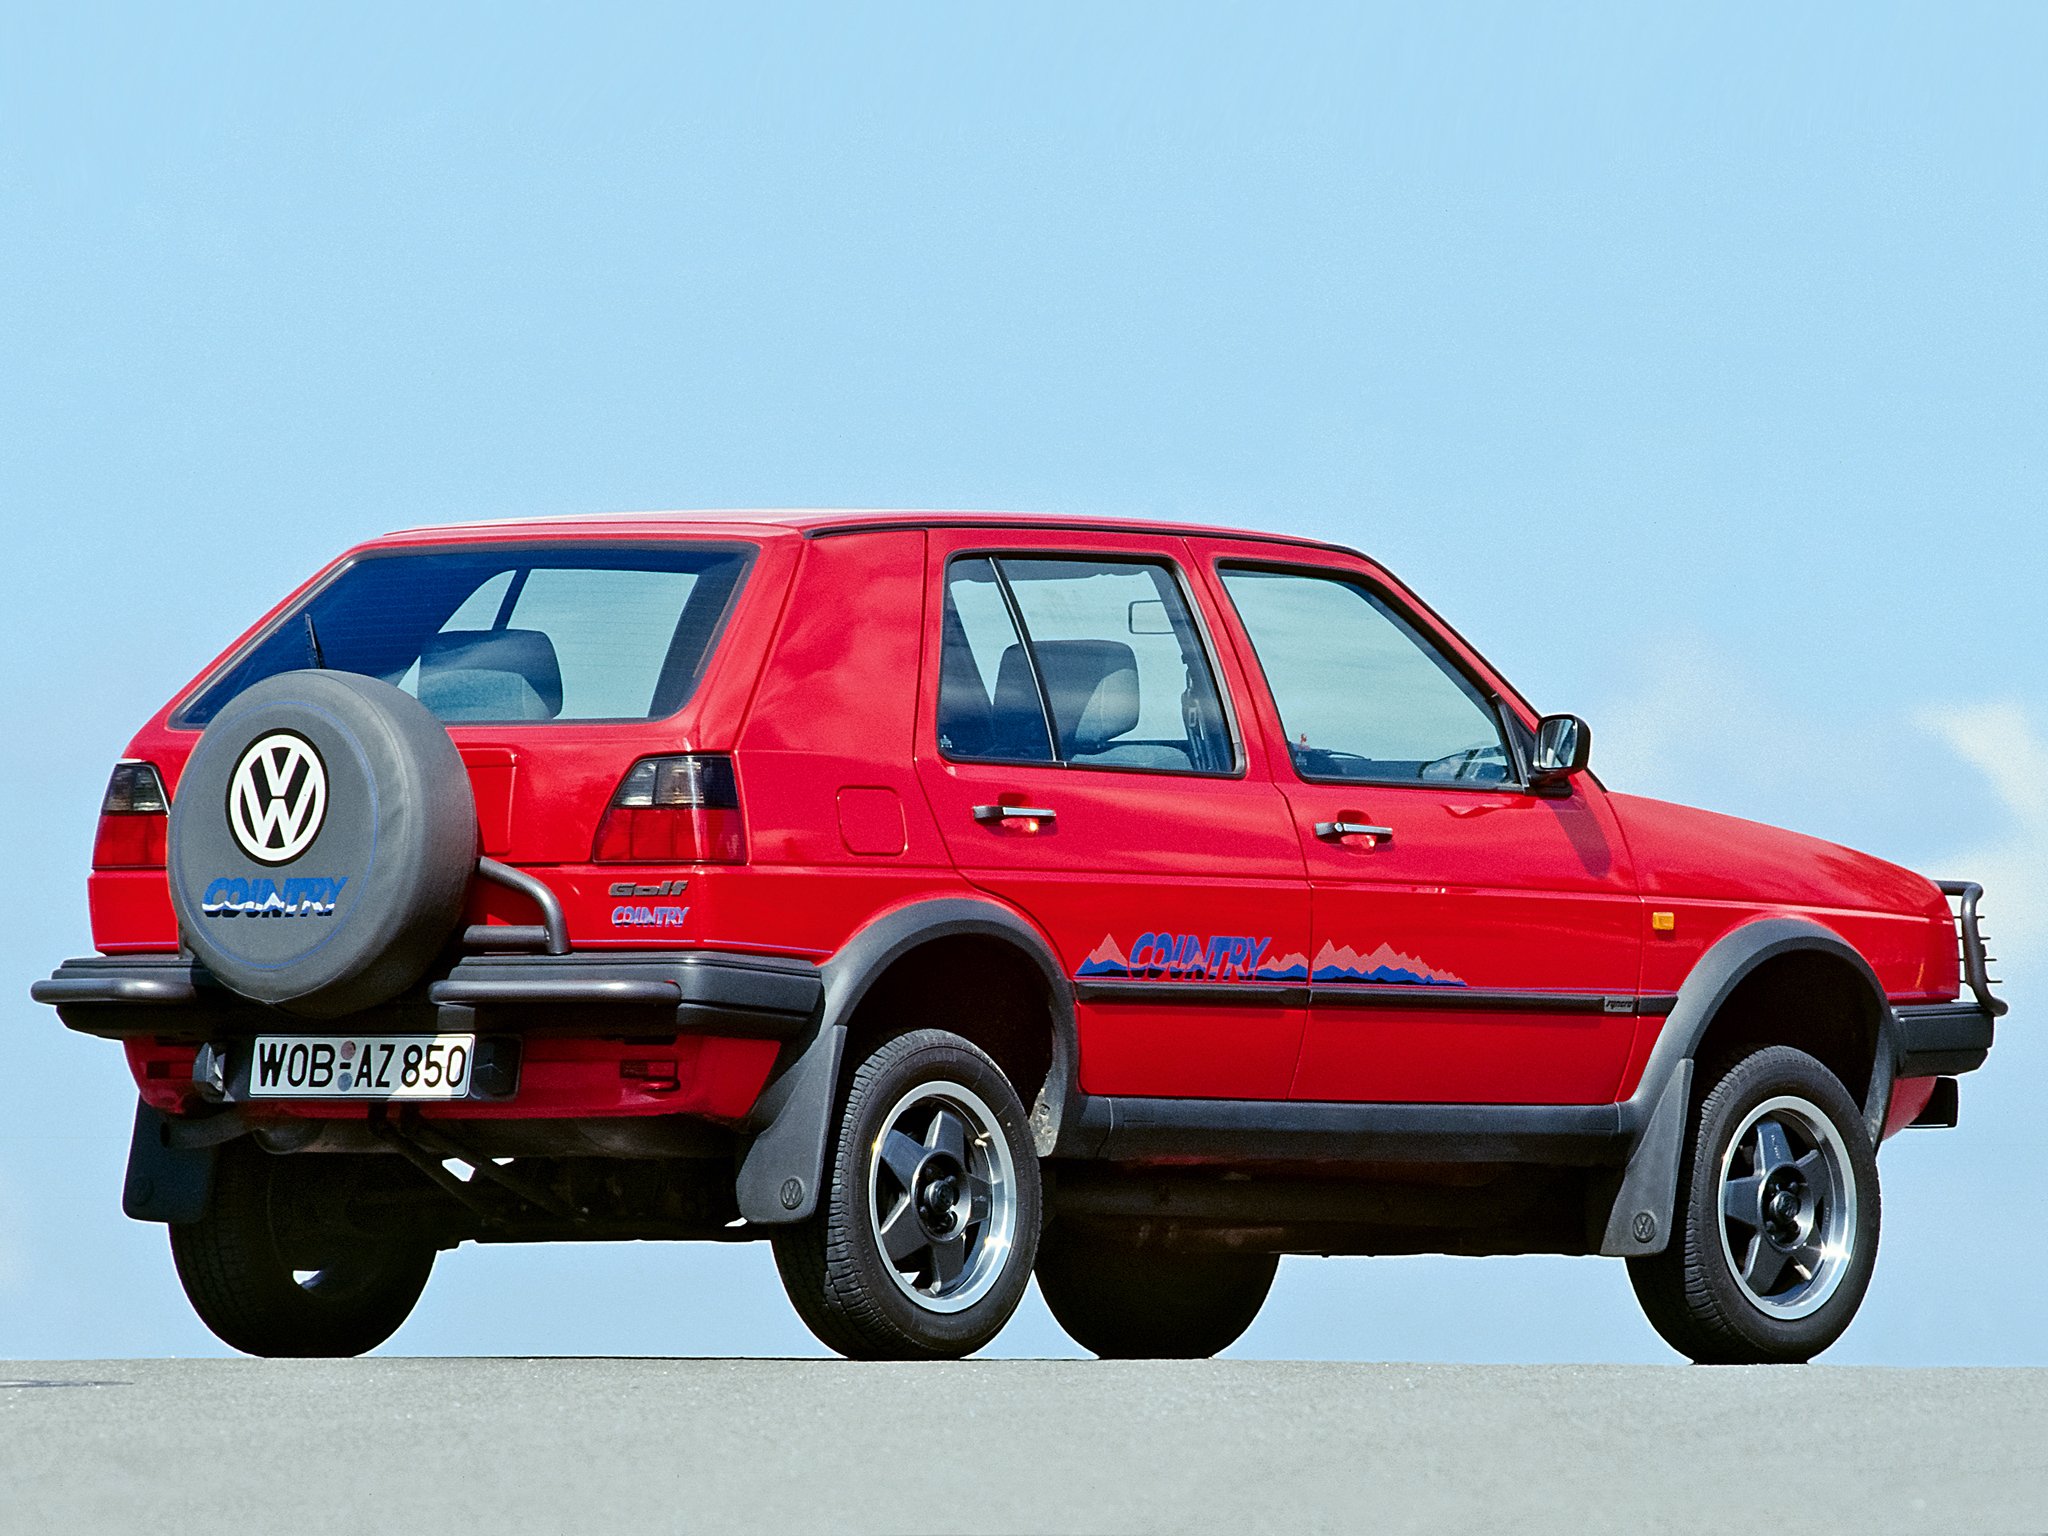 Гольф синхро. Volkswagen Golf 2 Country. Фольксваген гольф 2 кросс Кантри. Volkswagen Golf Country, 1991. Фольксваген гольф 2 Кантри синхро.